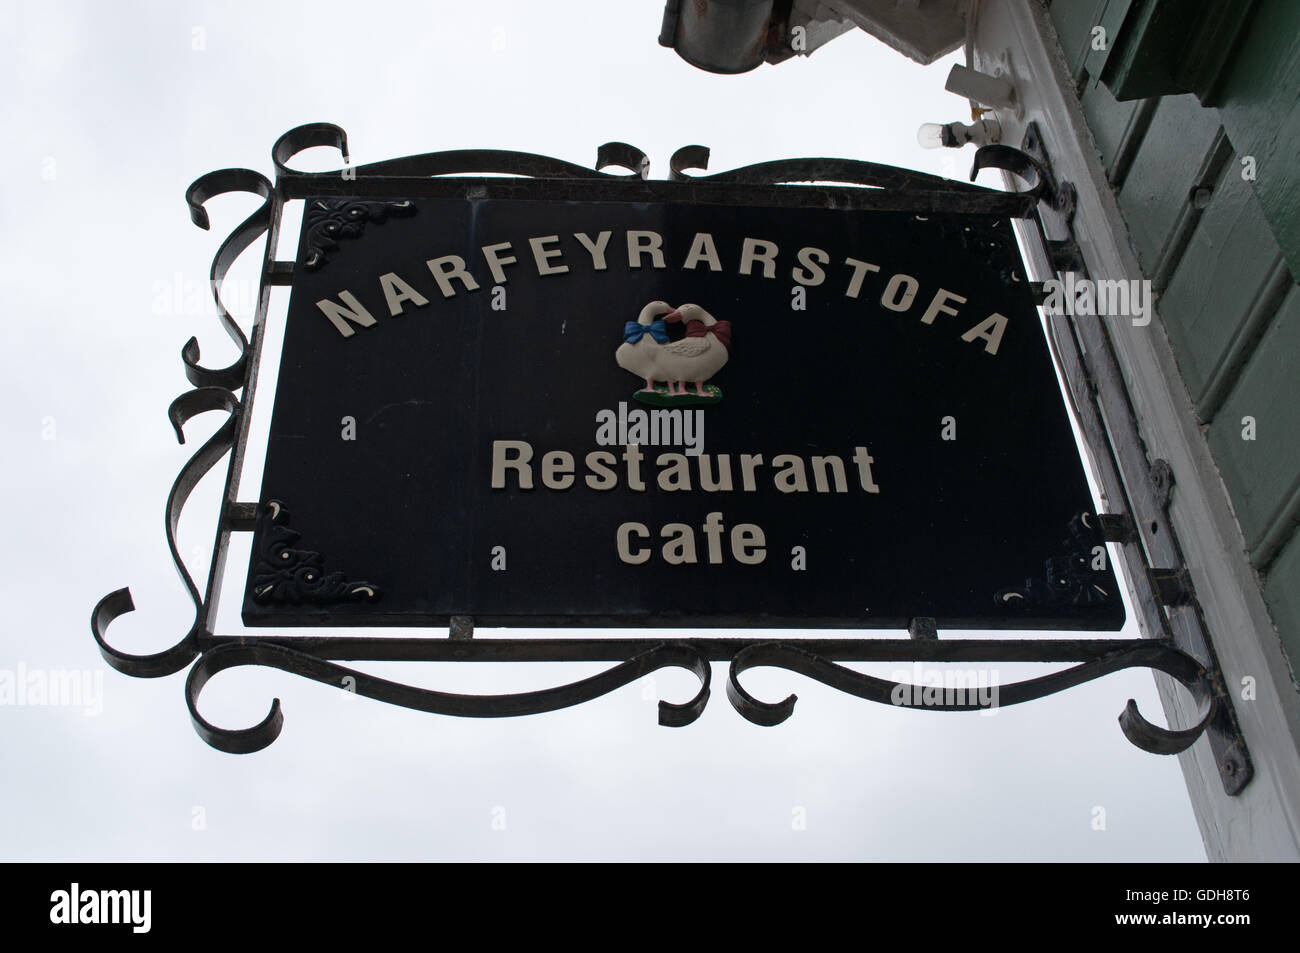 Island: das Schmiedeeisen Zeichen des Narfeyrarstofa, ein Restaurant in der Nähe des Hafens in der Fischerei Stadt von Stykkisholmur Stockfoto